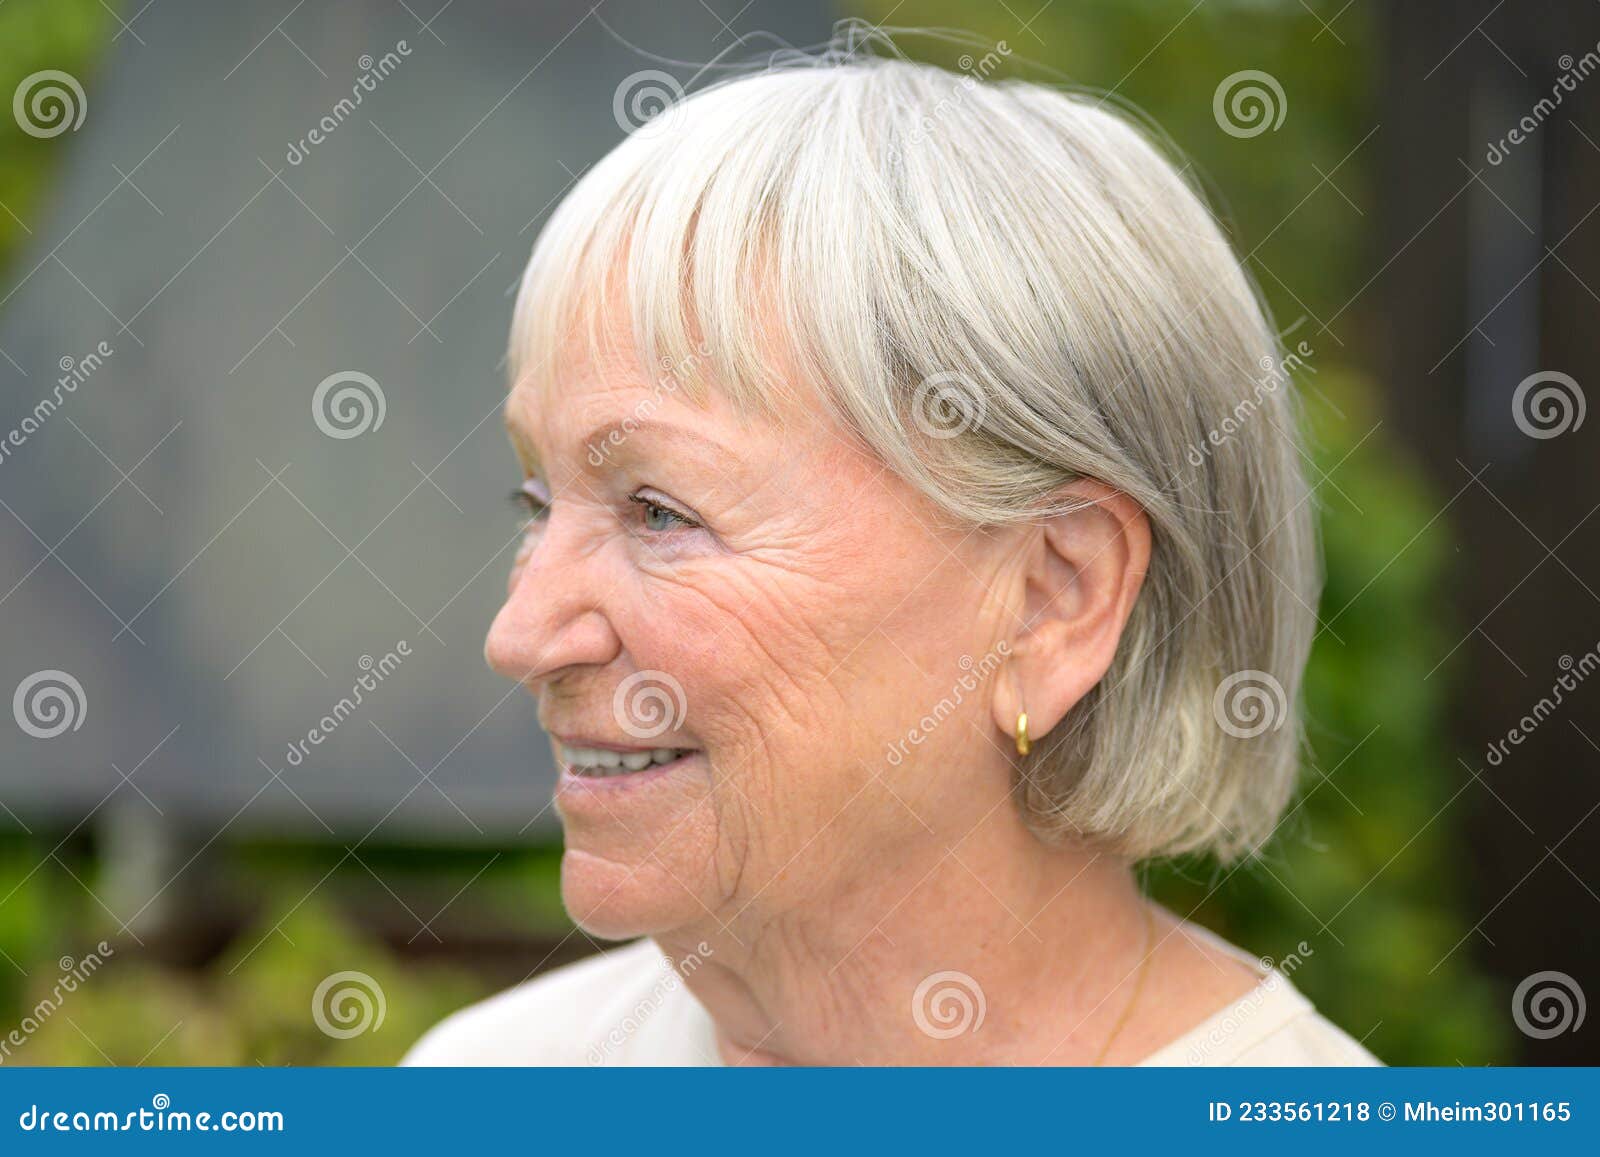 Older Women Solo